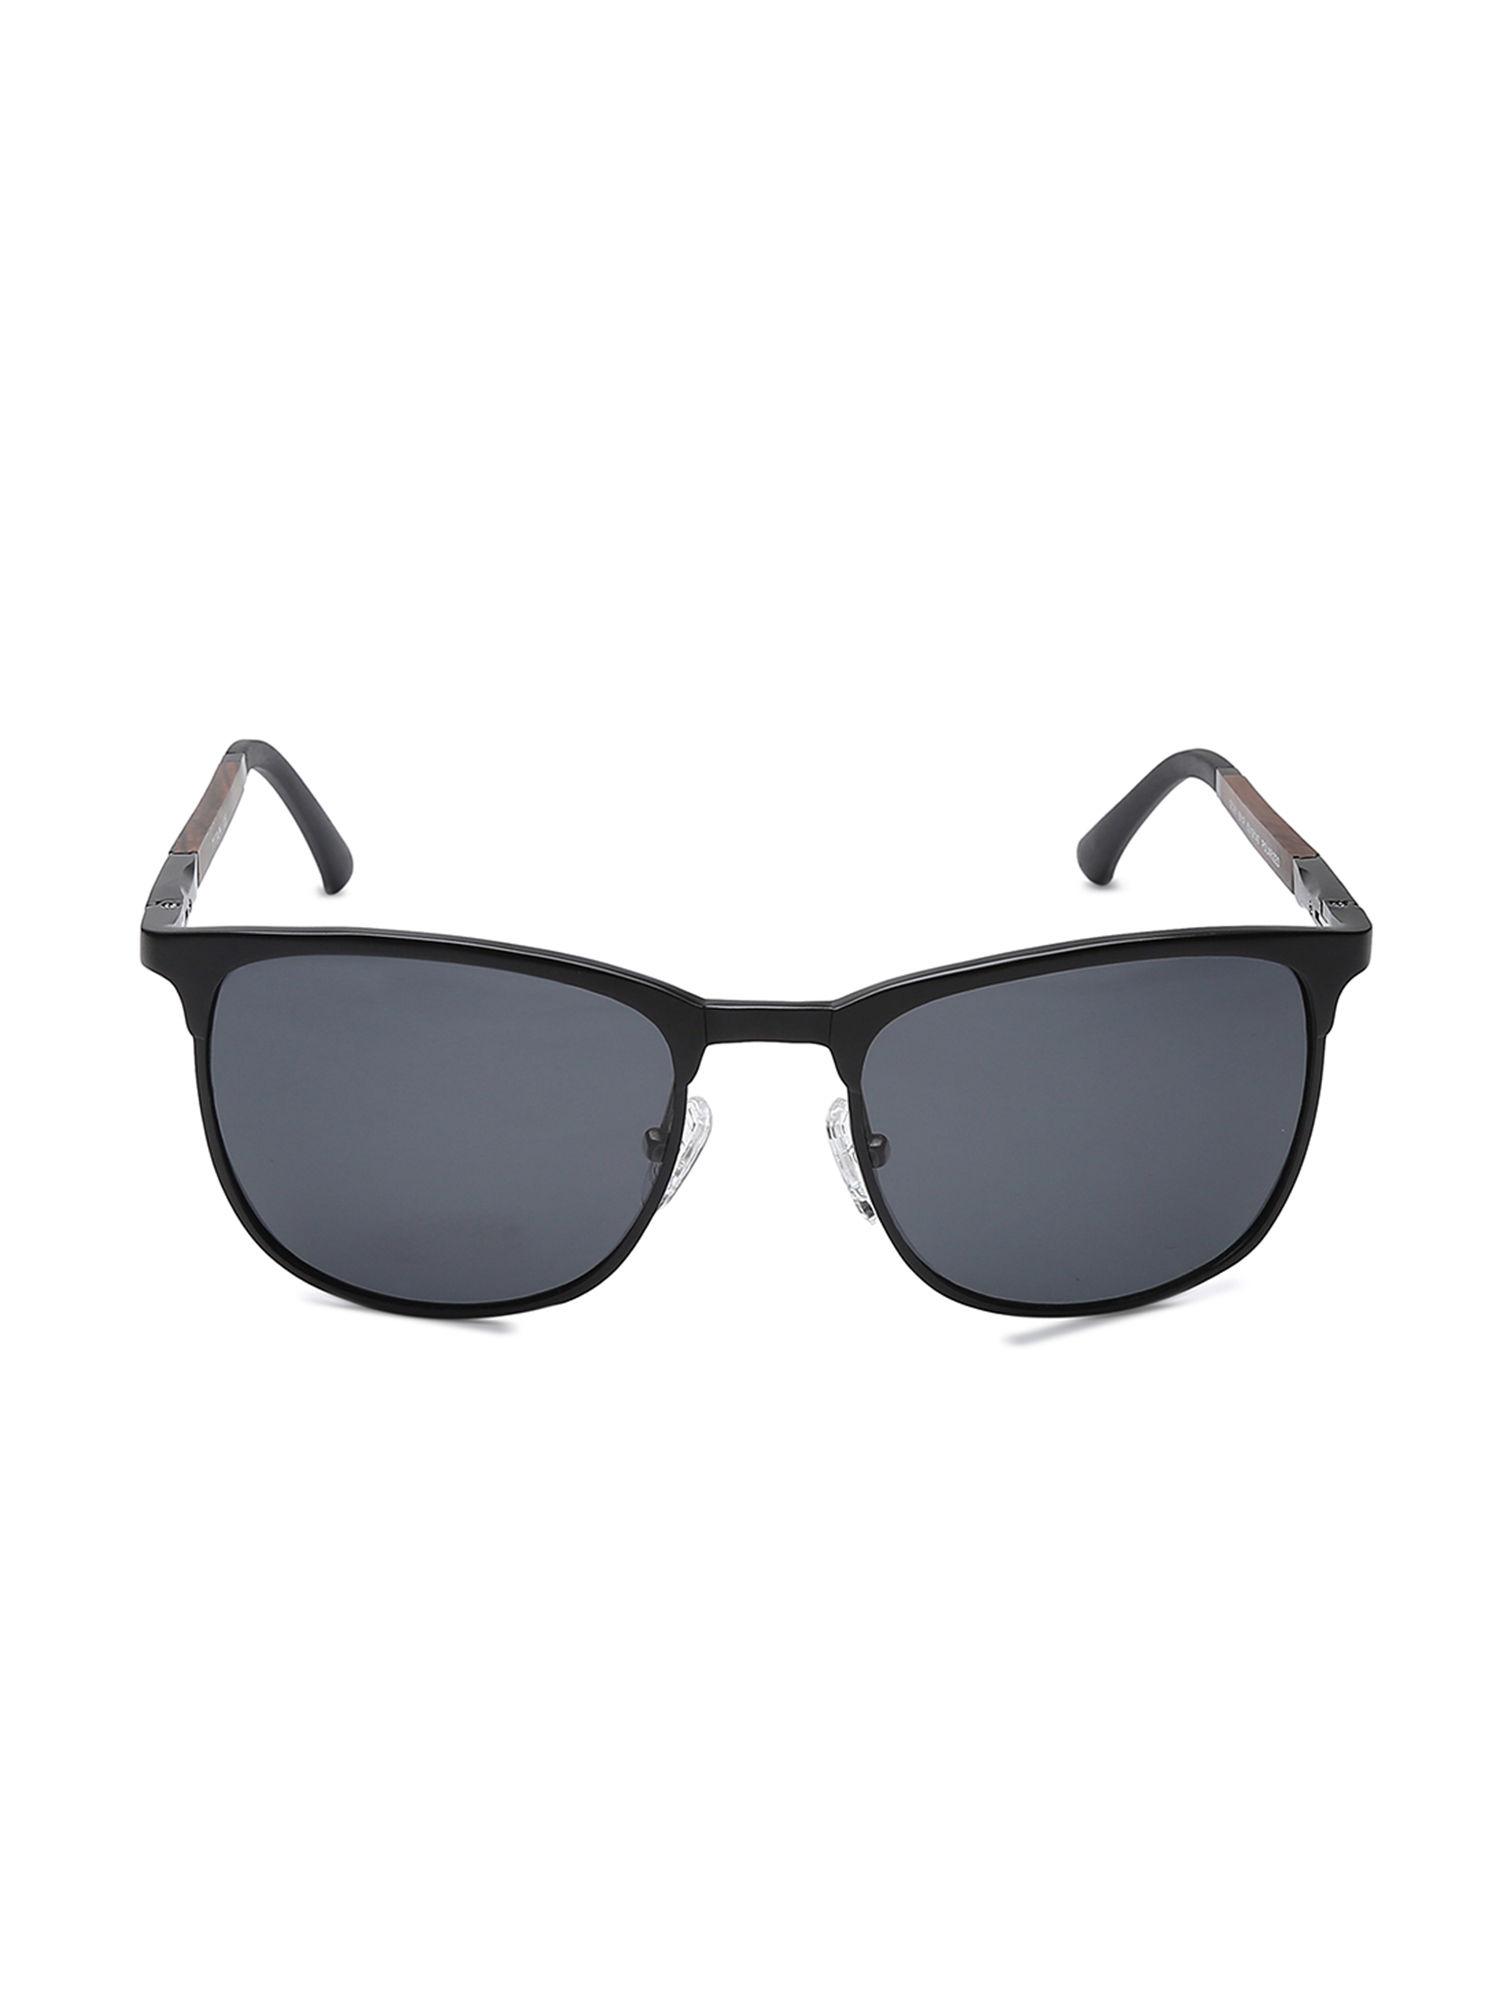 black square sunglasses (gc361bk1pv)